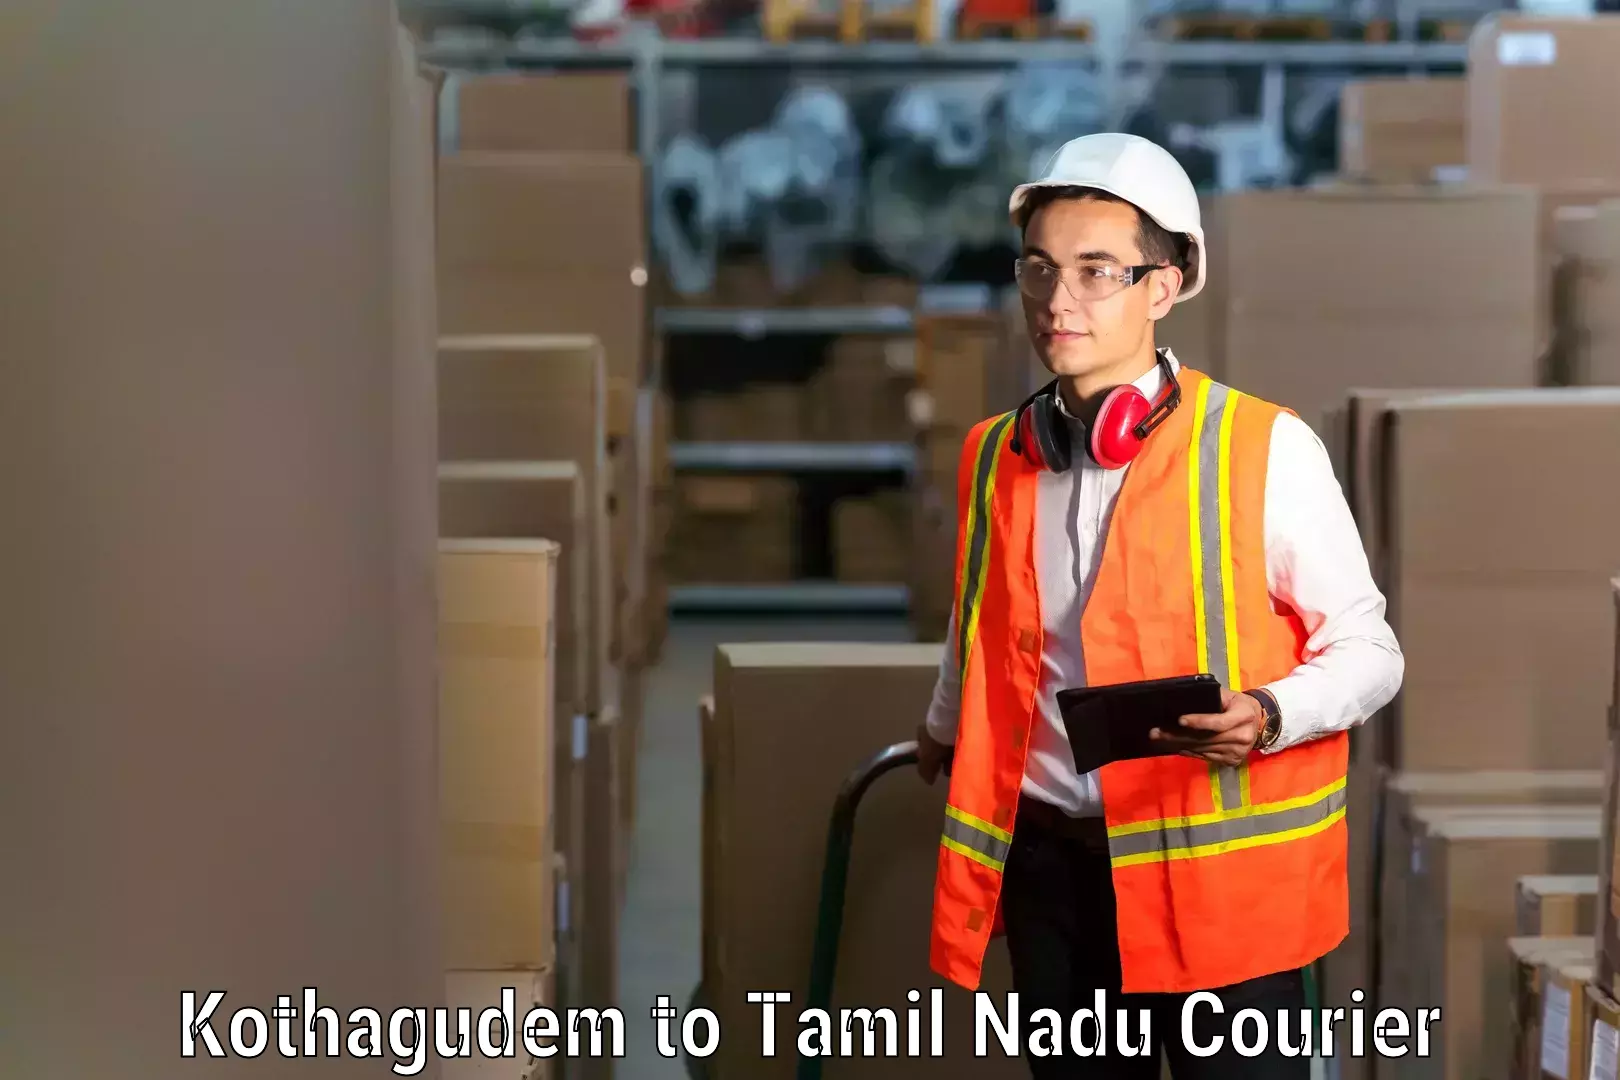 Furniture moving and handling Kothagudem to Tamil Nadu